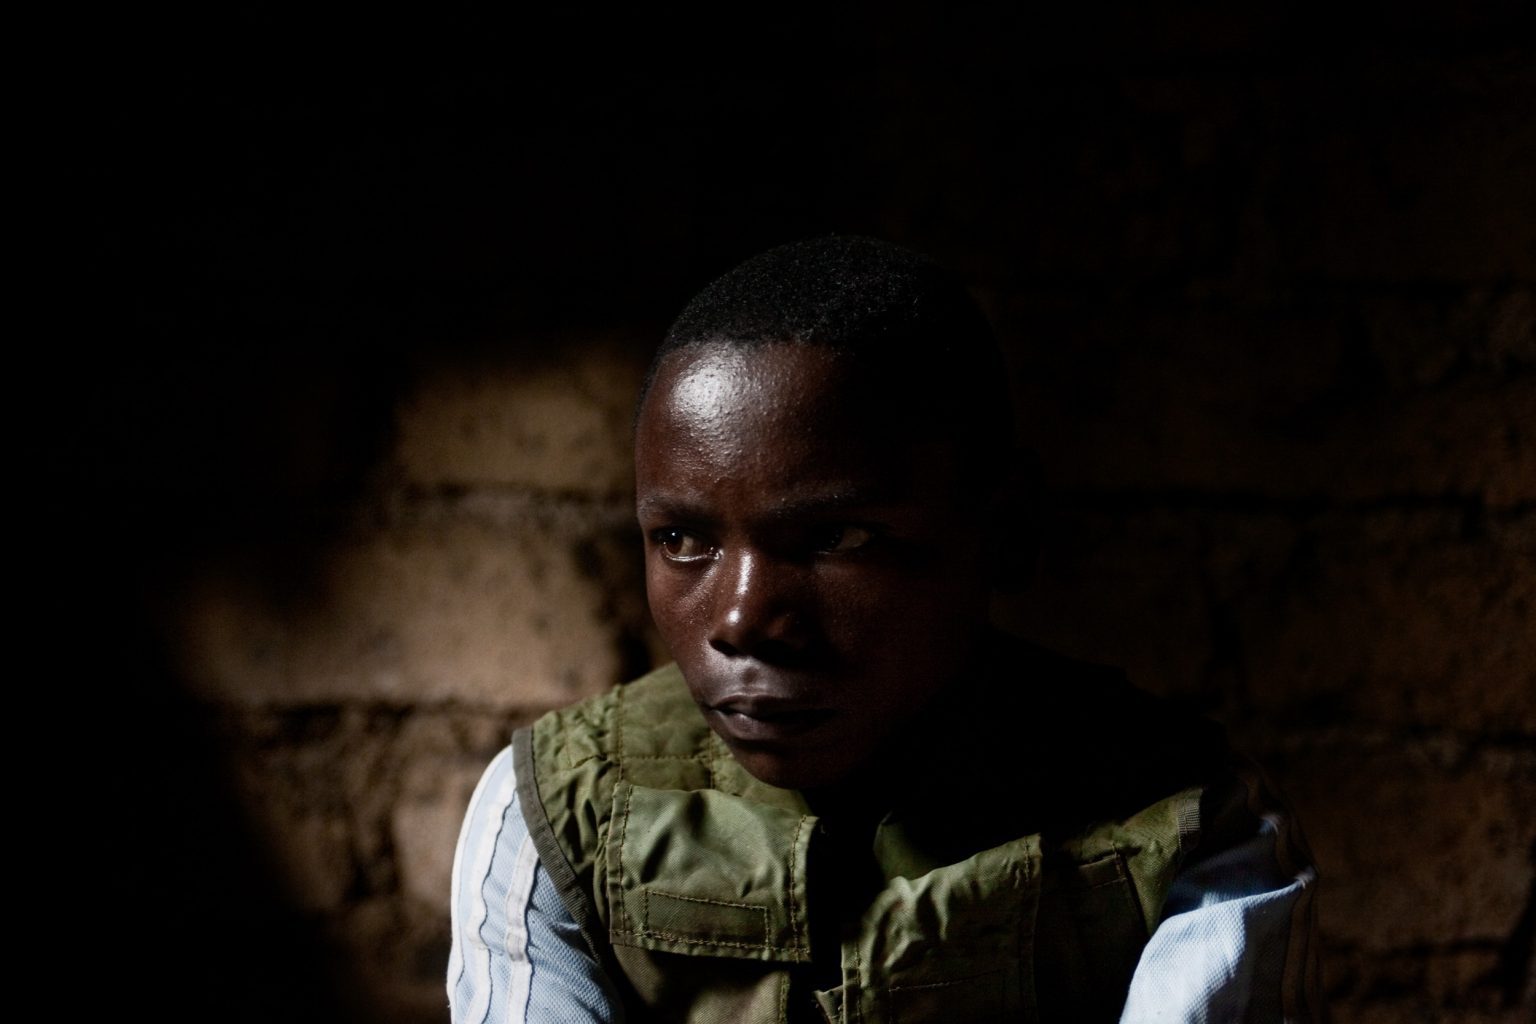 Bambini Soldato
Dr Congo, Nord Kivu, Kibumba
Febbraio 2009
M. ha 16 anni ed è nell'esercito da 6 mesi. E' nato a Kibumba, l'area dove si trova attualmente. Vede i suoi genitori tutti i giorni ed è entrato nell'esercito a causa della povertà. Si arruolato senza dirlo ai genitori perché loro erano contrari. Adesso si è deciso ad abbandonare lesercito ma ha paura di dirlo ai suoi superiori. Non usa le armi perché il suo compito è di trasportare cose ma ha visto morire molta gente.

Child soldiers
Drc, North Kivu, Kibumba
February 2009
M. is 16 years old and he is been with the militaries for 6 months. He was born in Kibumba and enrolled with the military to make some money as he comes from a poor family. He did it without telling his parents as they didnt want him to do it. Now he wishes to leave the militaries but he is scared of the reaction of his superiors. His duty in the military is to carry things so he doesnt use weapons but he has seen many people die.